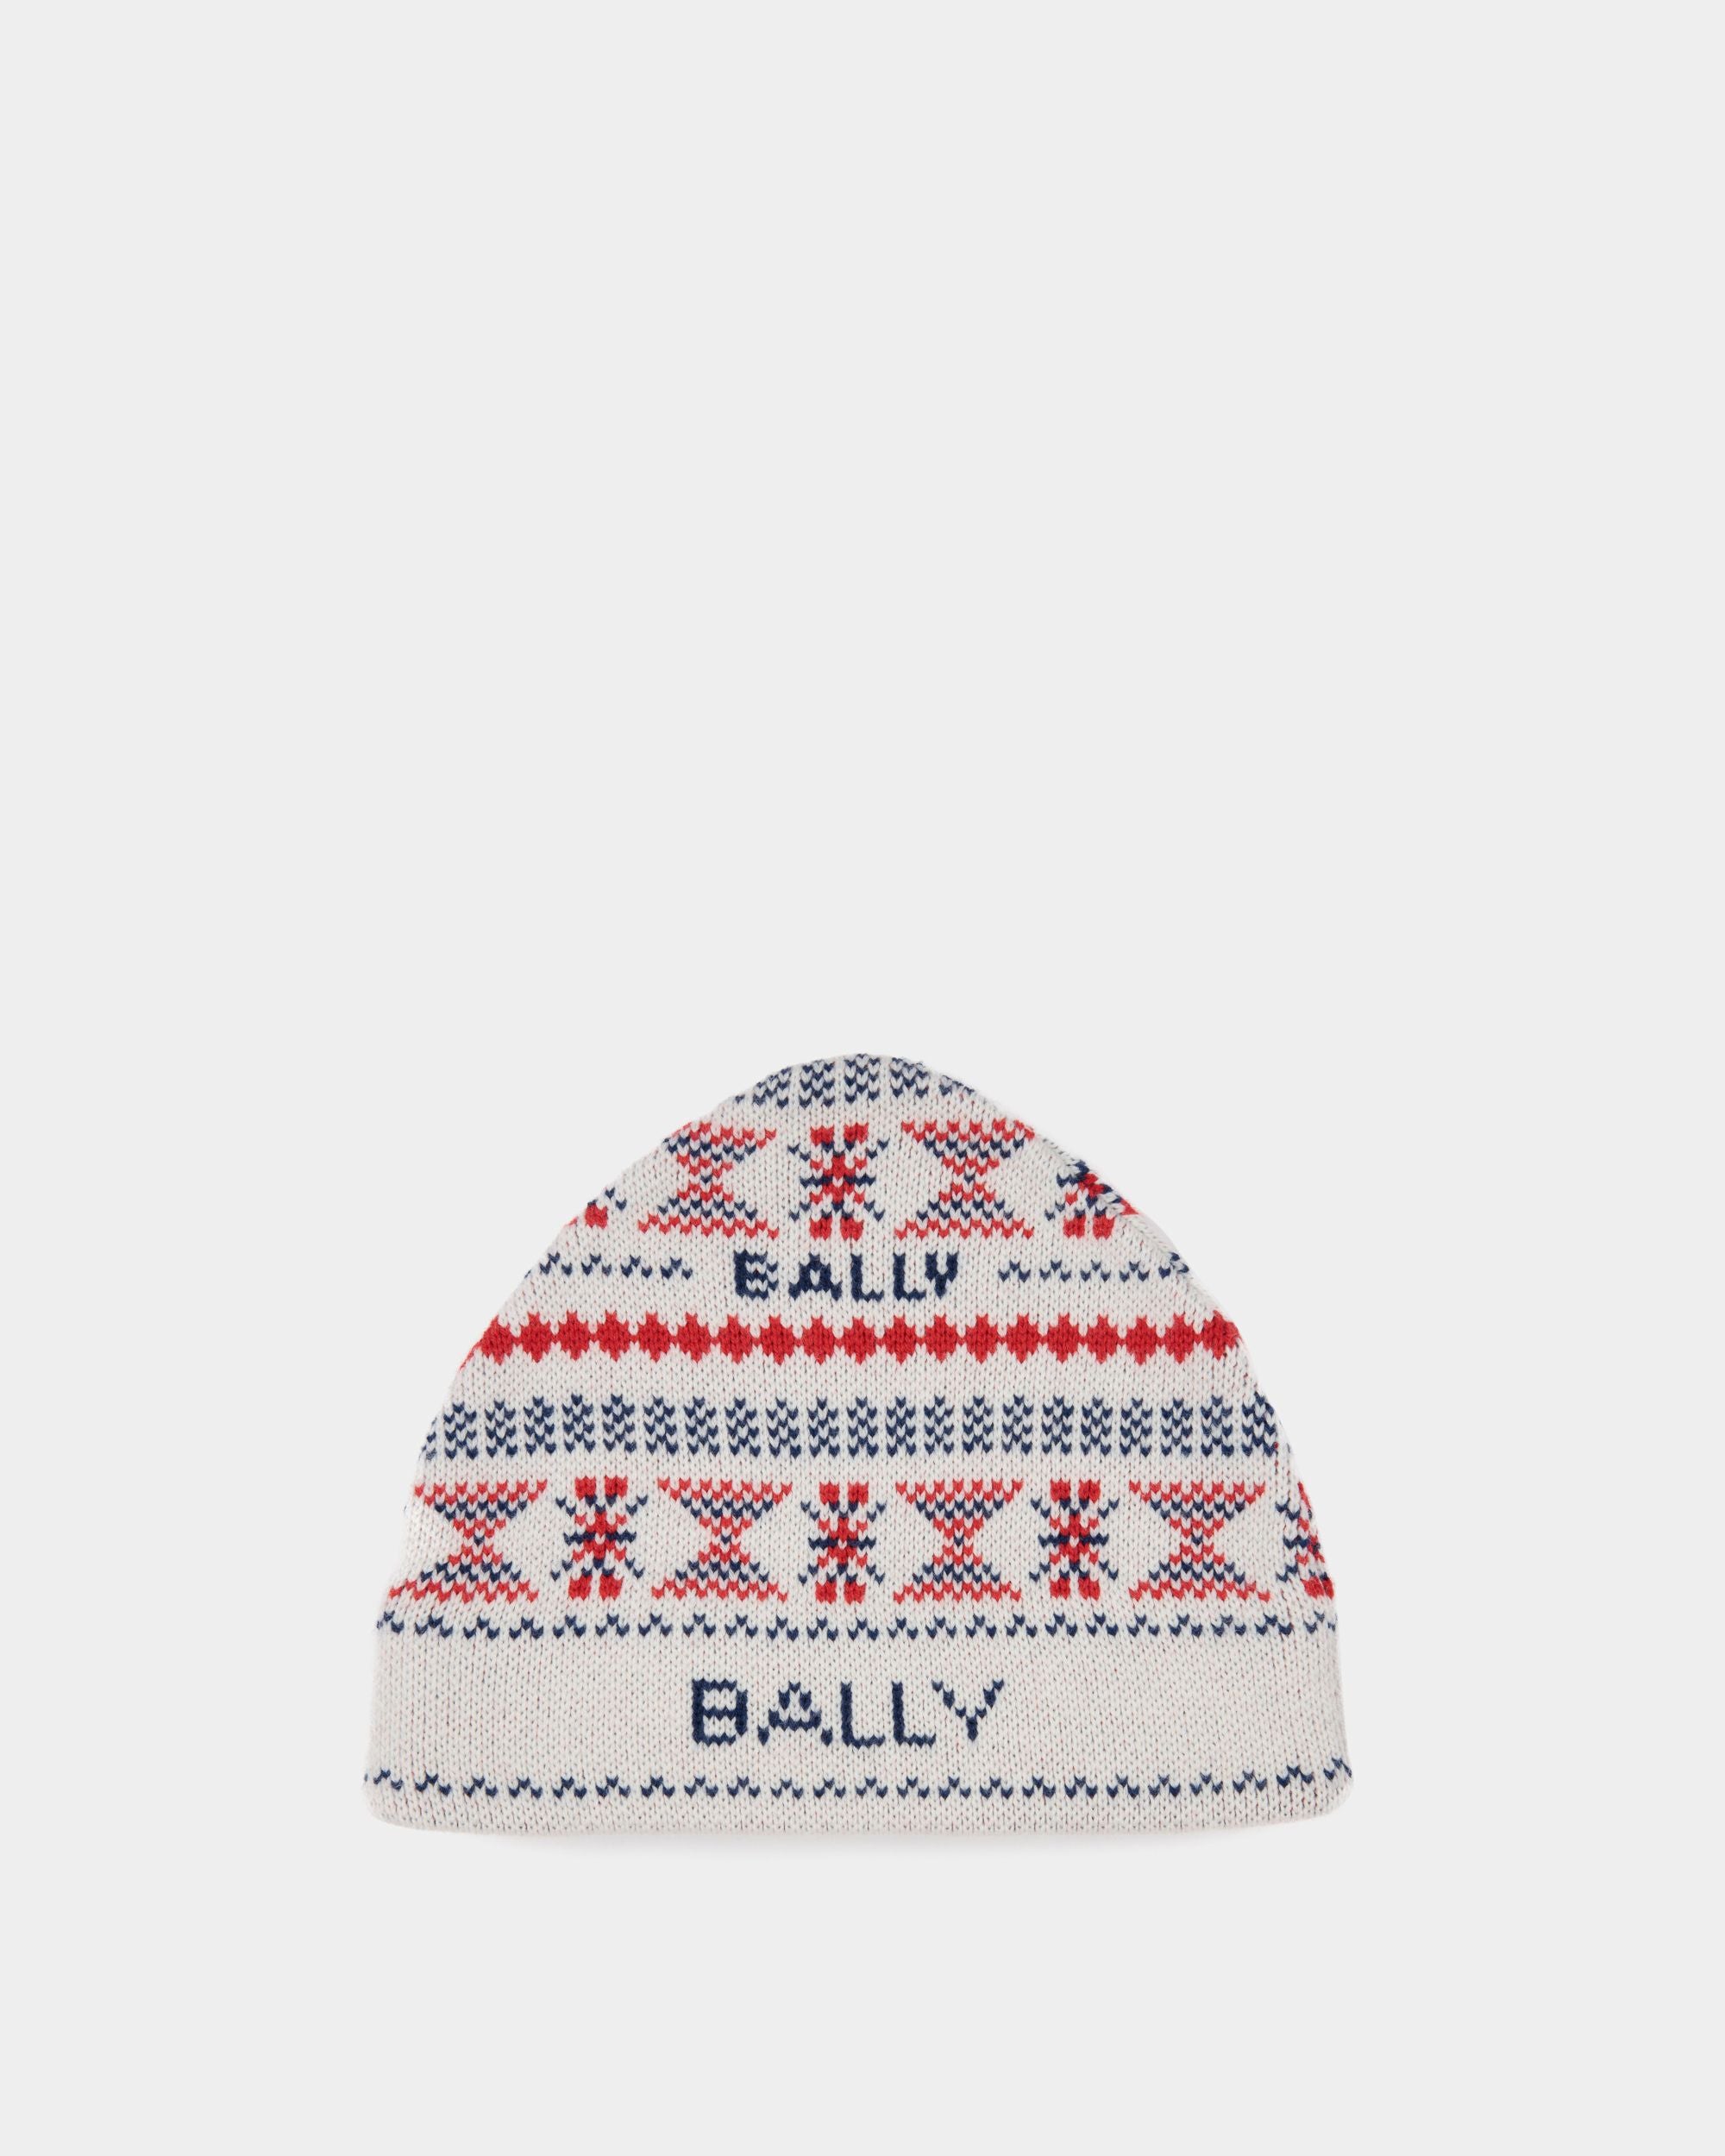 Cappello a cuffia da uomo in lana multicolore | Bally | Still Life Fronte